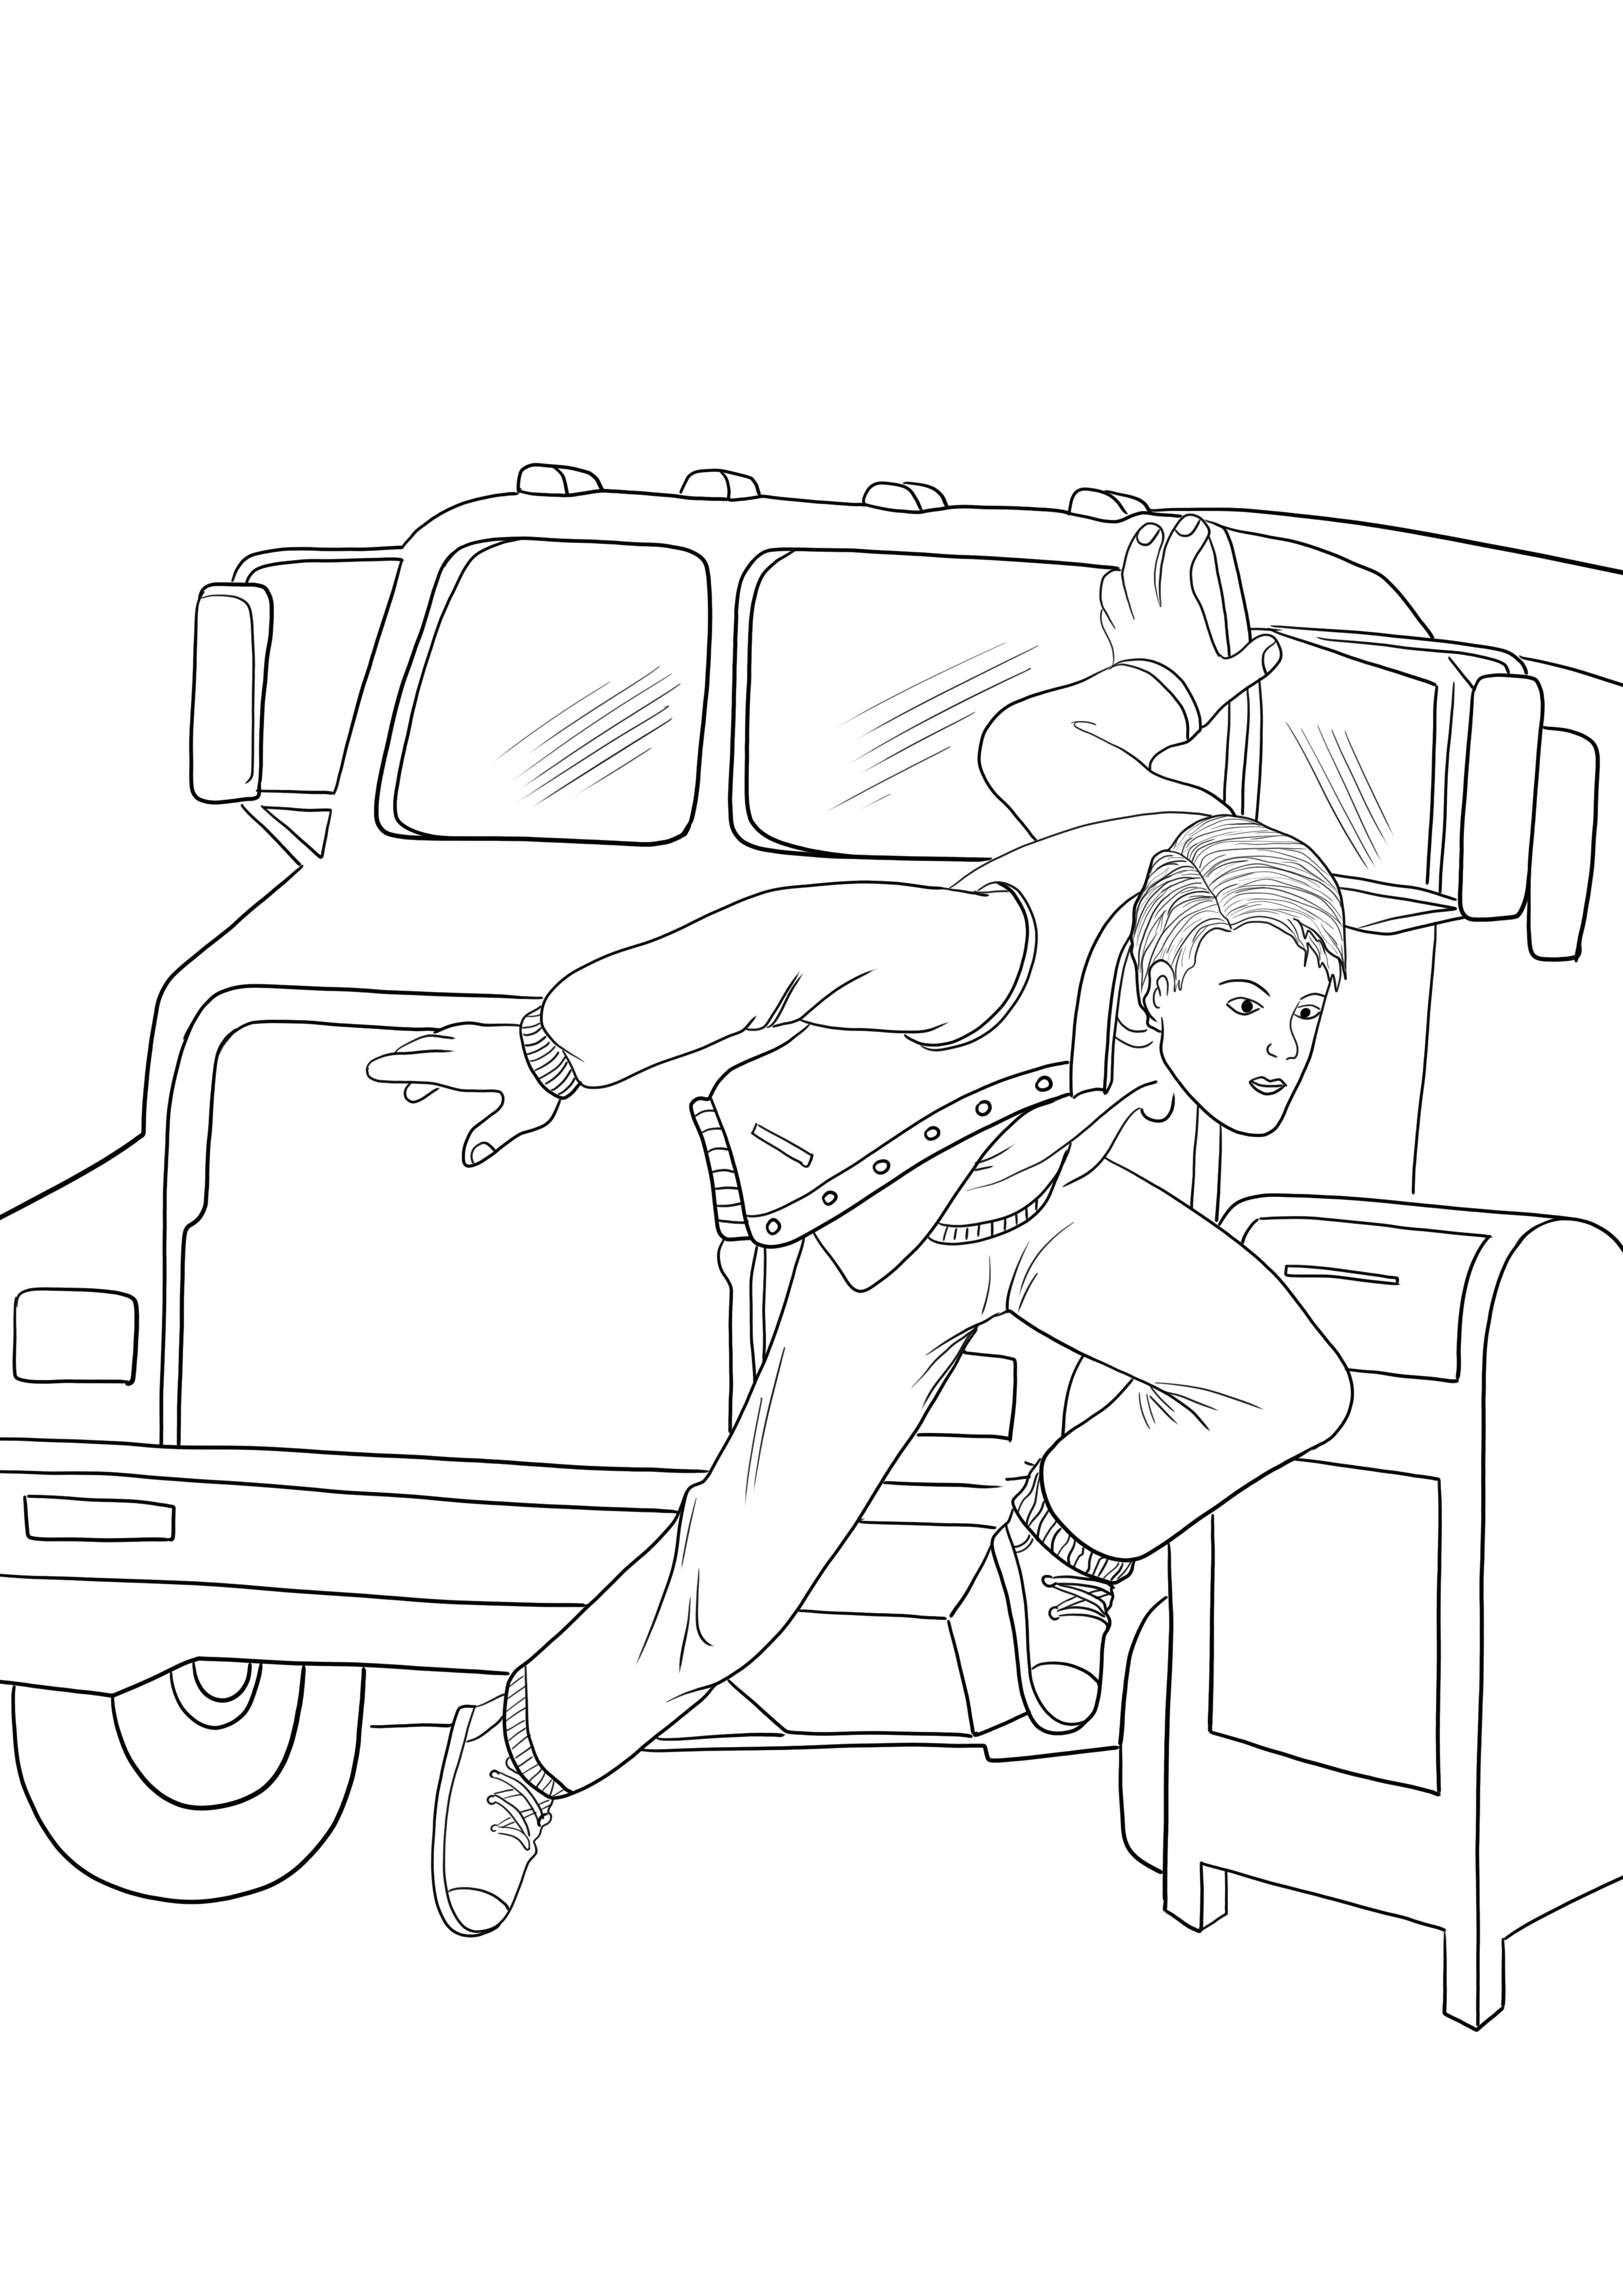 Imagem fácil de colorir do Homem-Aranha pulando do carro sem carro para imprimir